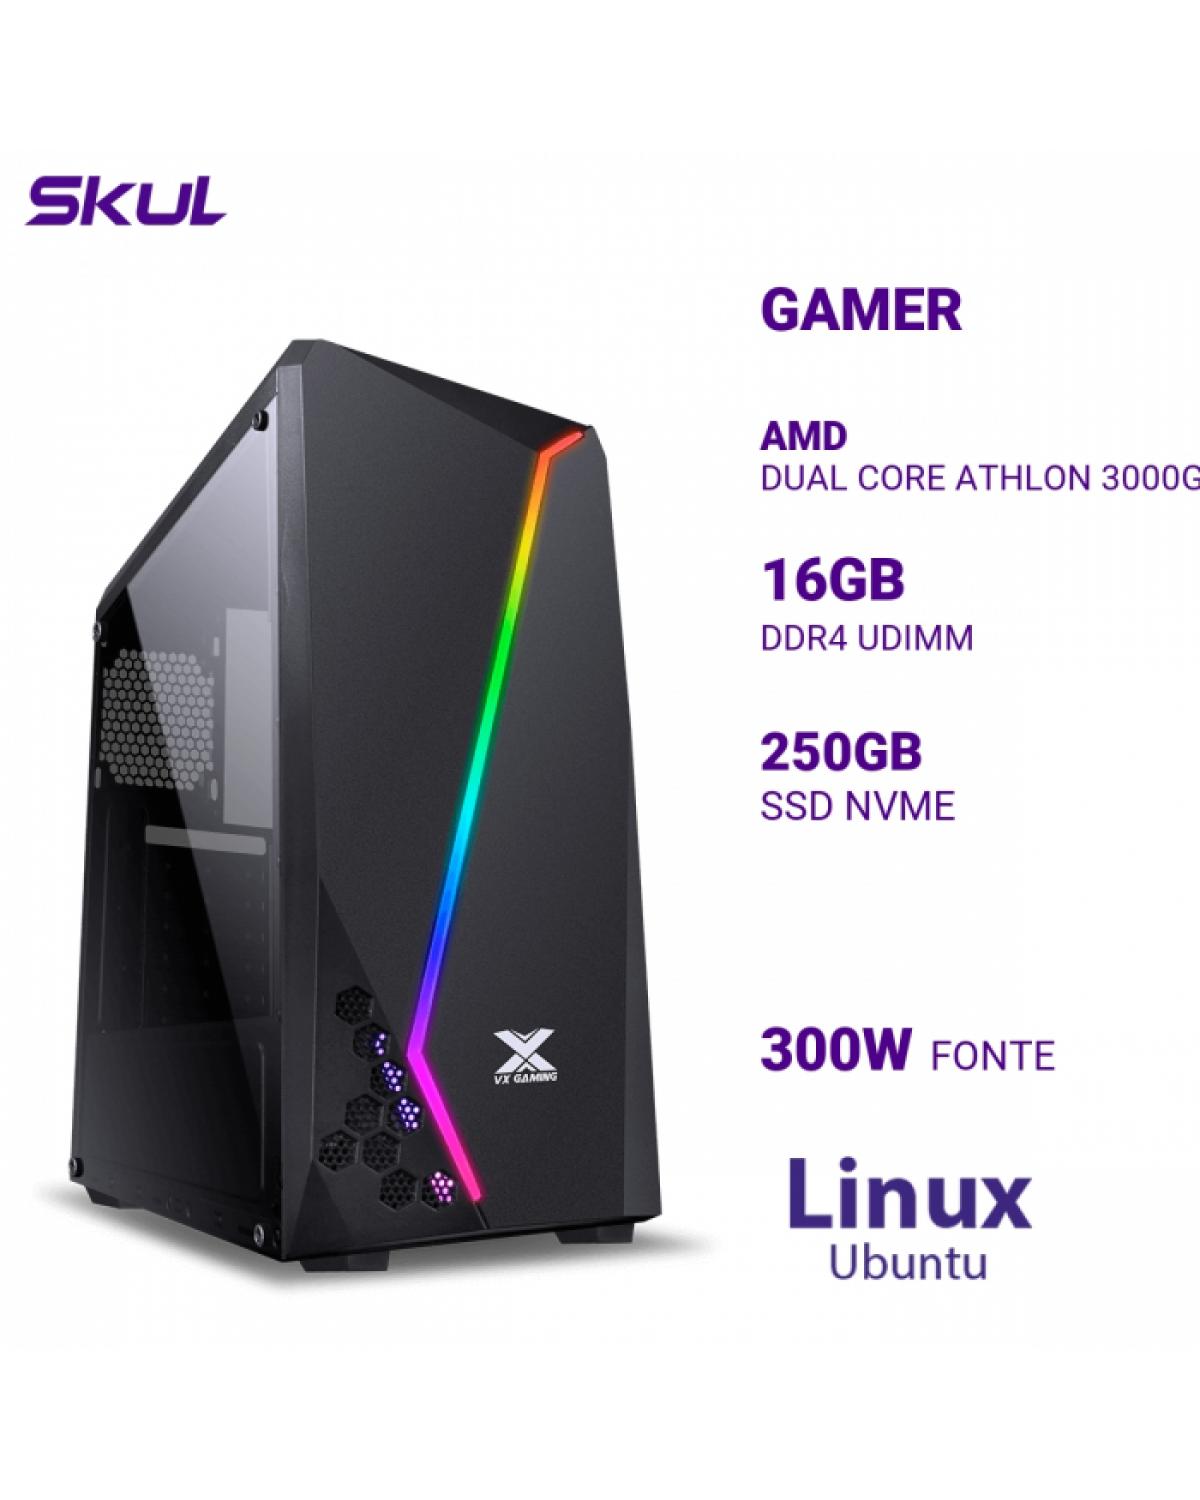 COMPUTADOR GAMER 1000 DUAL CORE ATHLON 3000G 3.50GHZ MEM 16GB DDR4 SSD 250GB NVME FONTE 300W LINUX